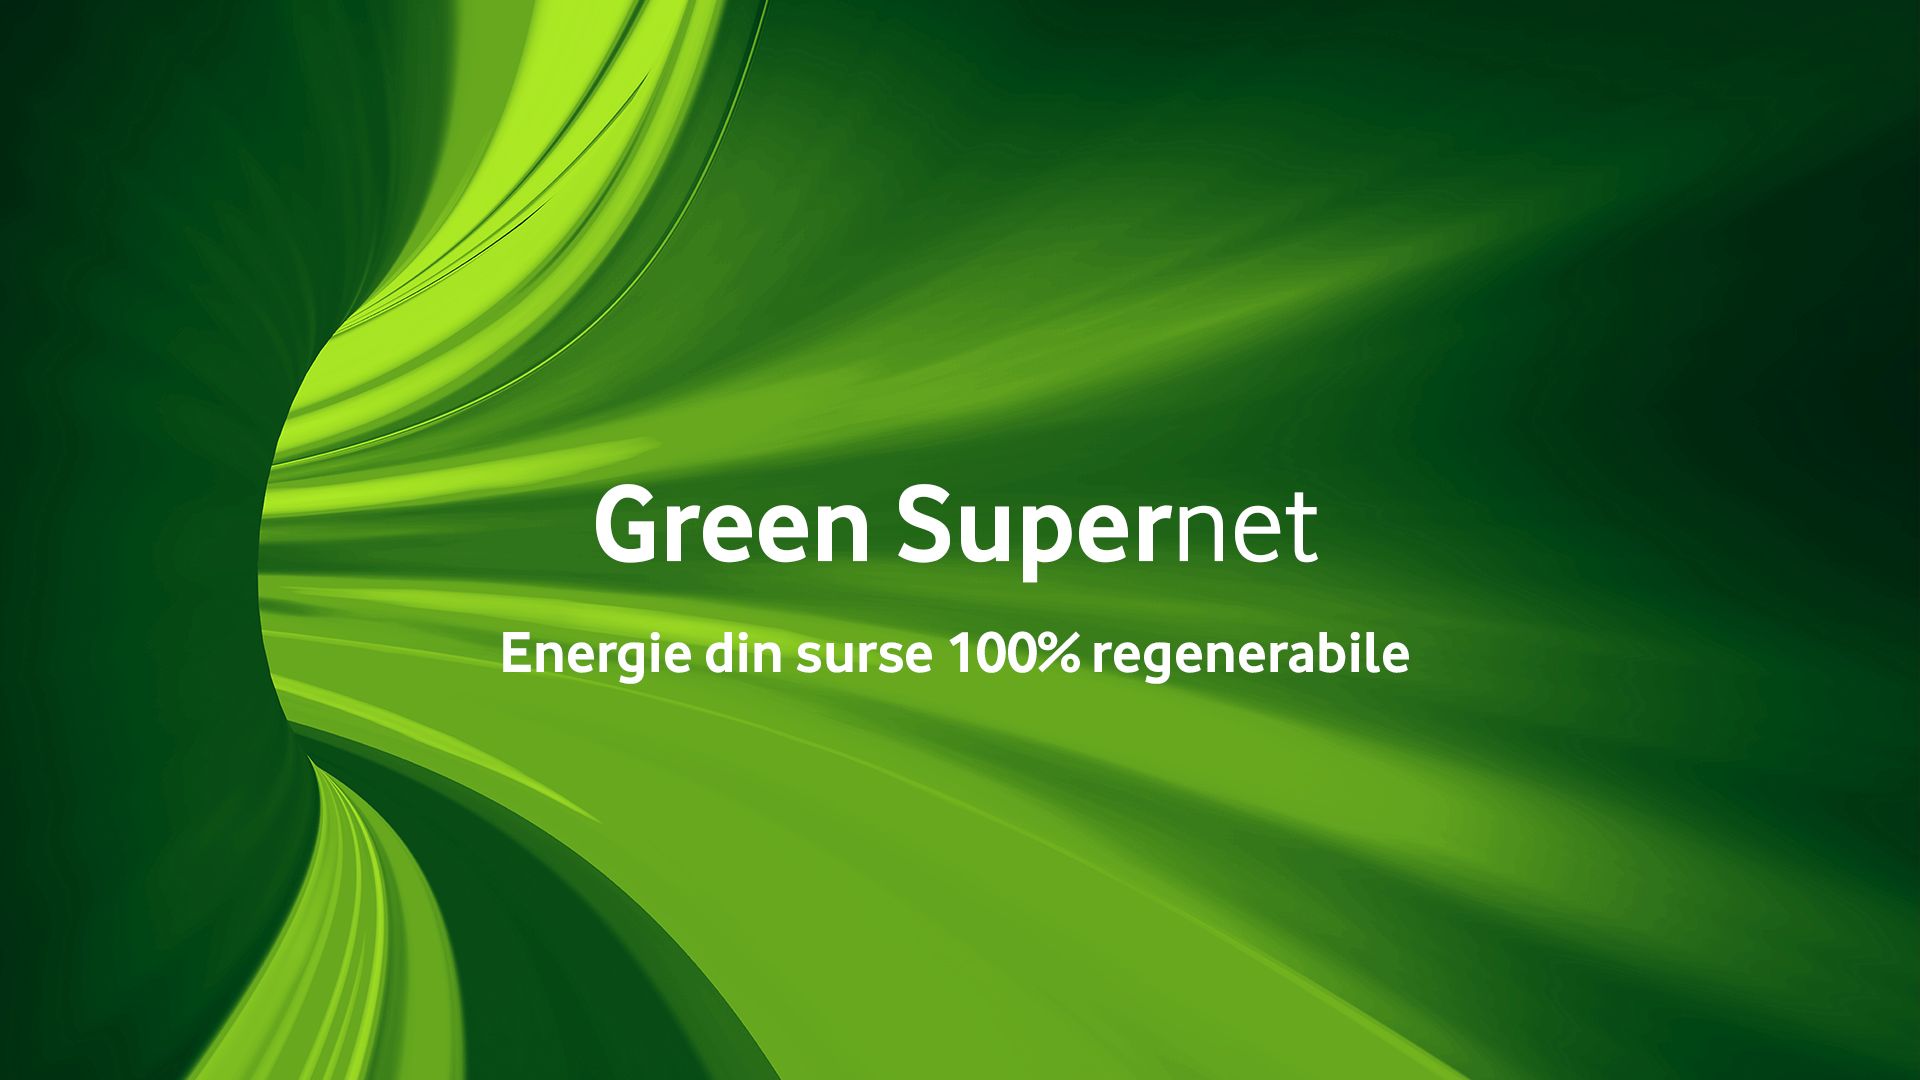 Rețeaua Vodafone este 100% verde, fiind alimentată integral din surse de energie regenerabile